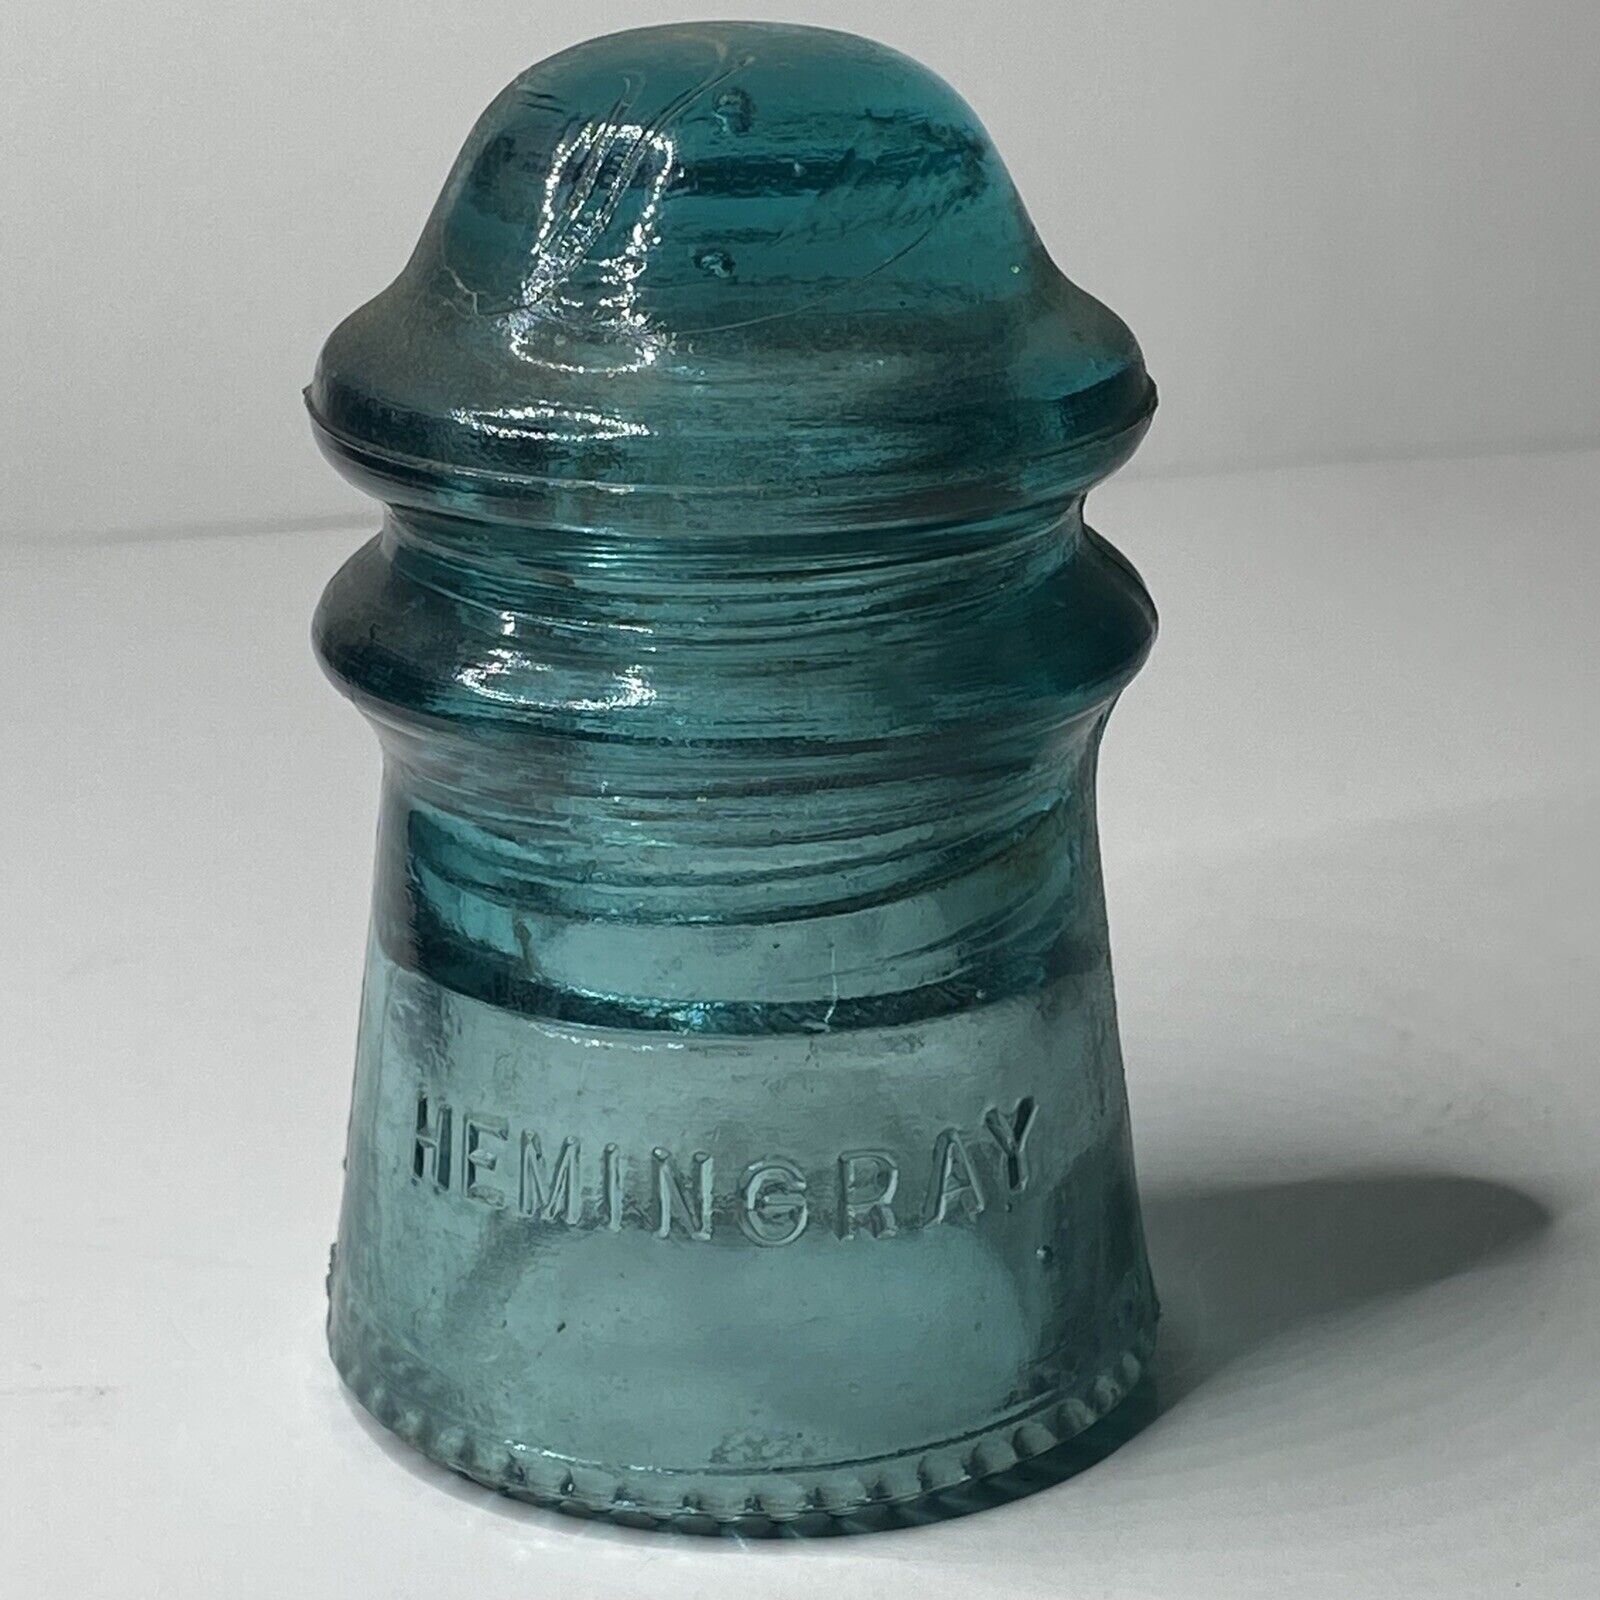 Hemmingray No. 9 Insulator Rare Antique Glass